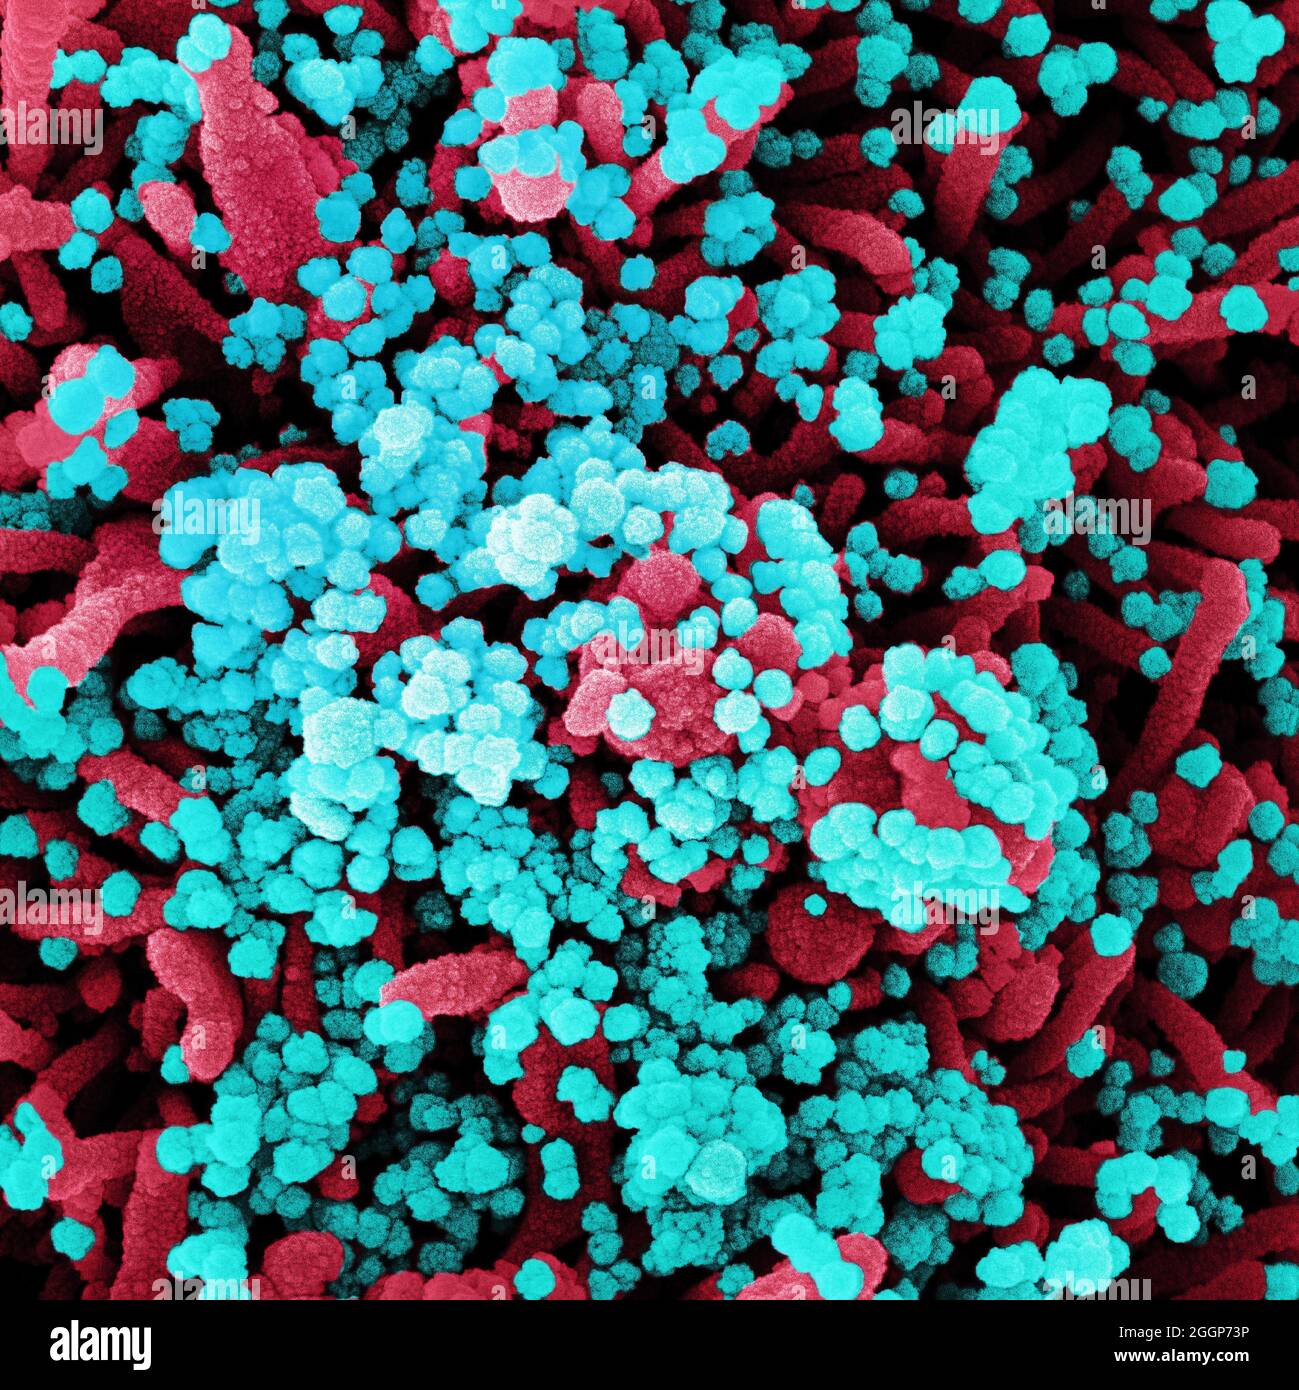 Micrografia elettronica a scansione di una cellula fortemente infettata da particelle di virus SARS-COV-2 (blu), isolate da un campione di paziente. Foto Stock